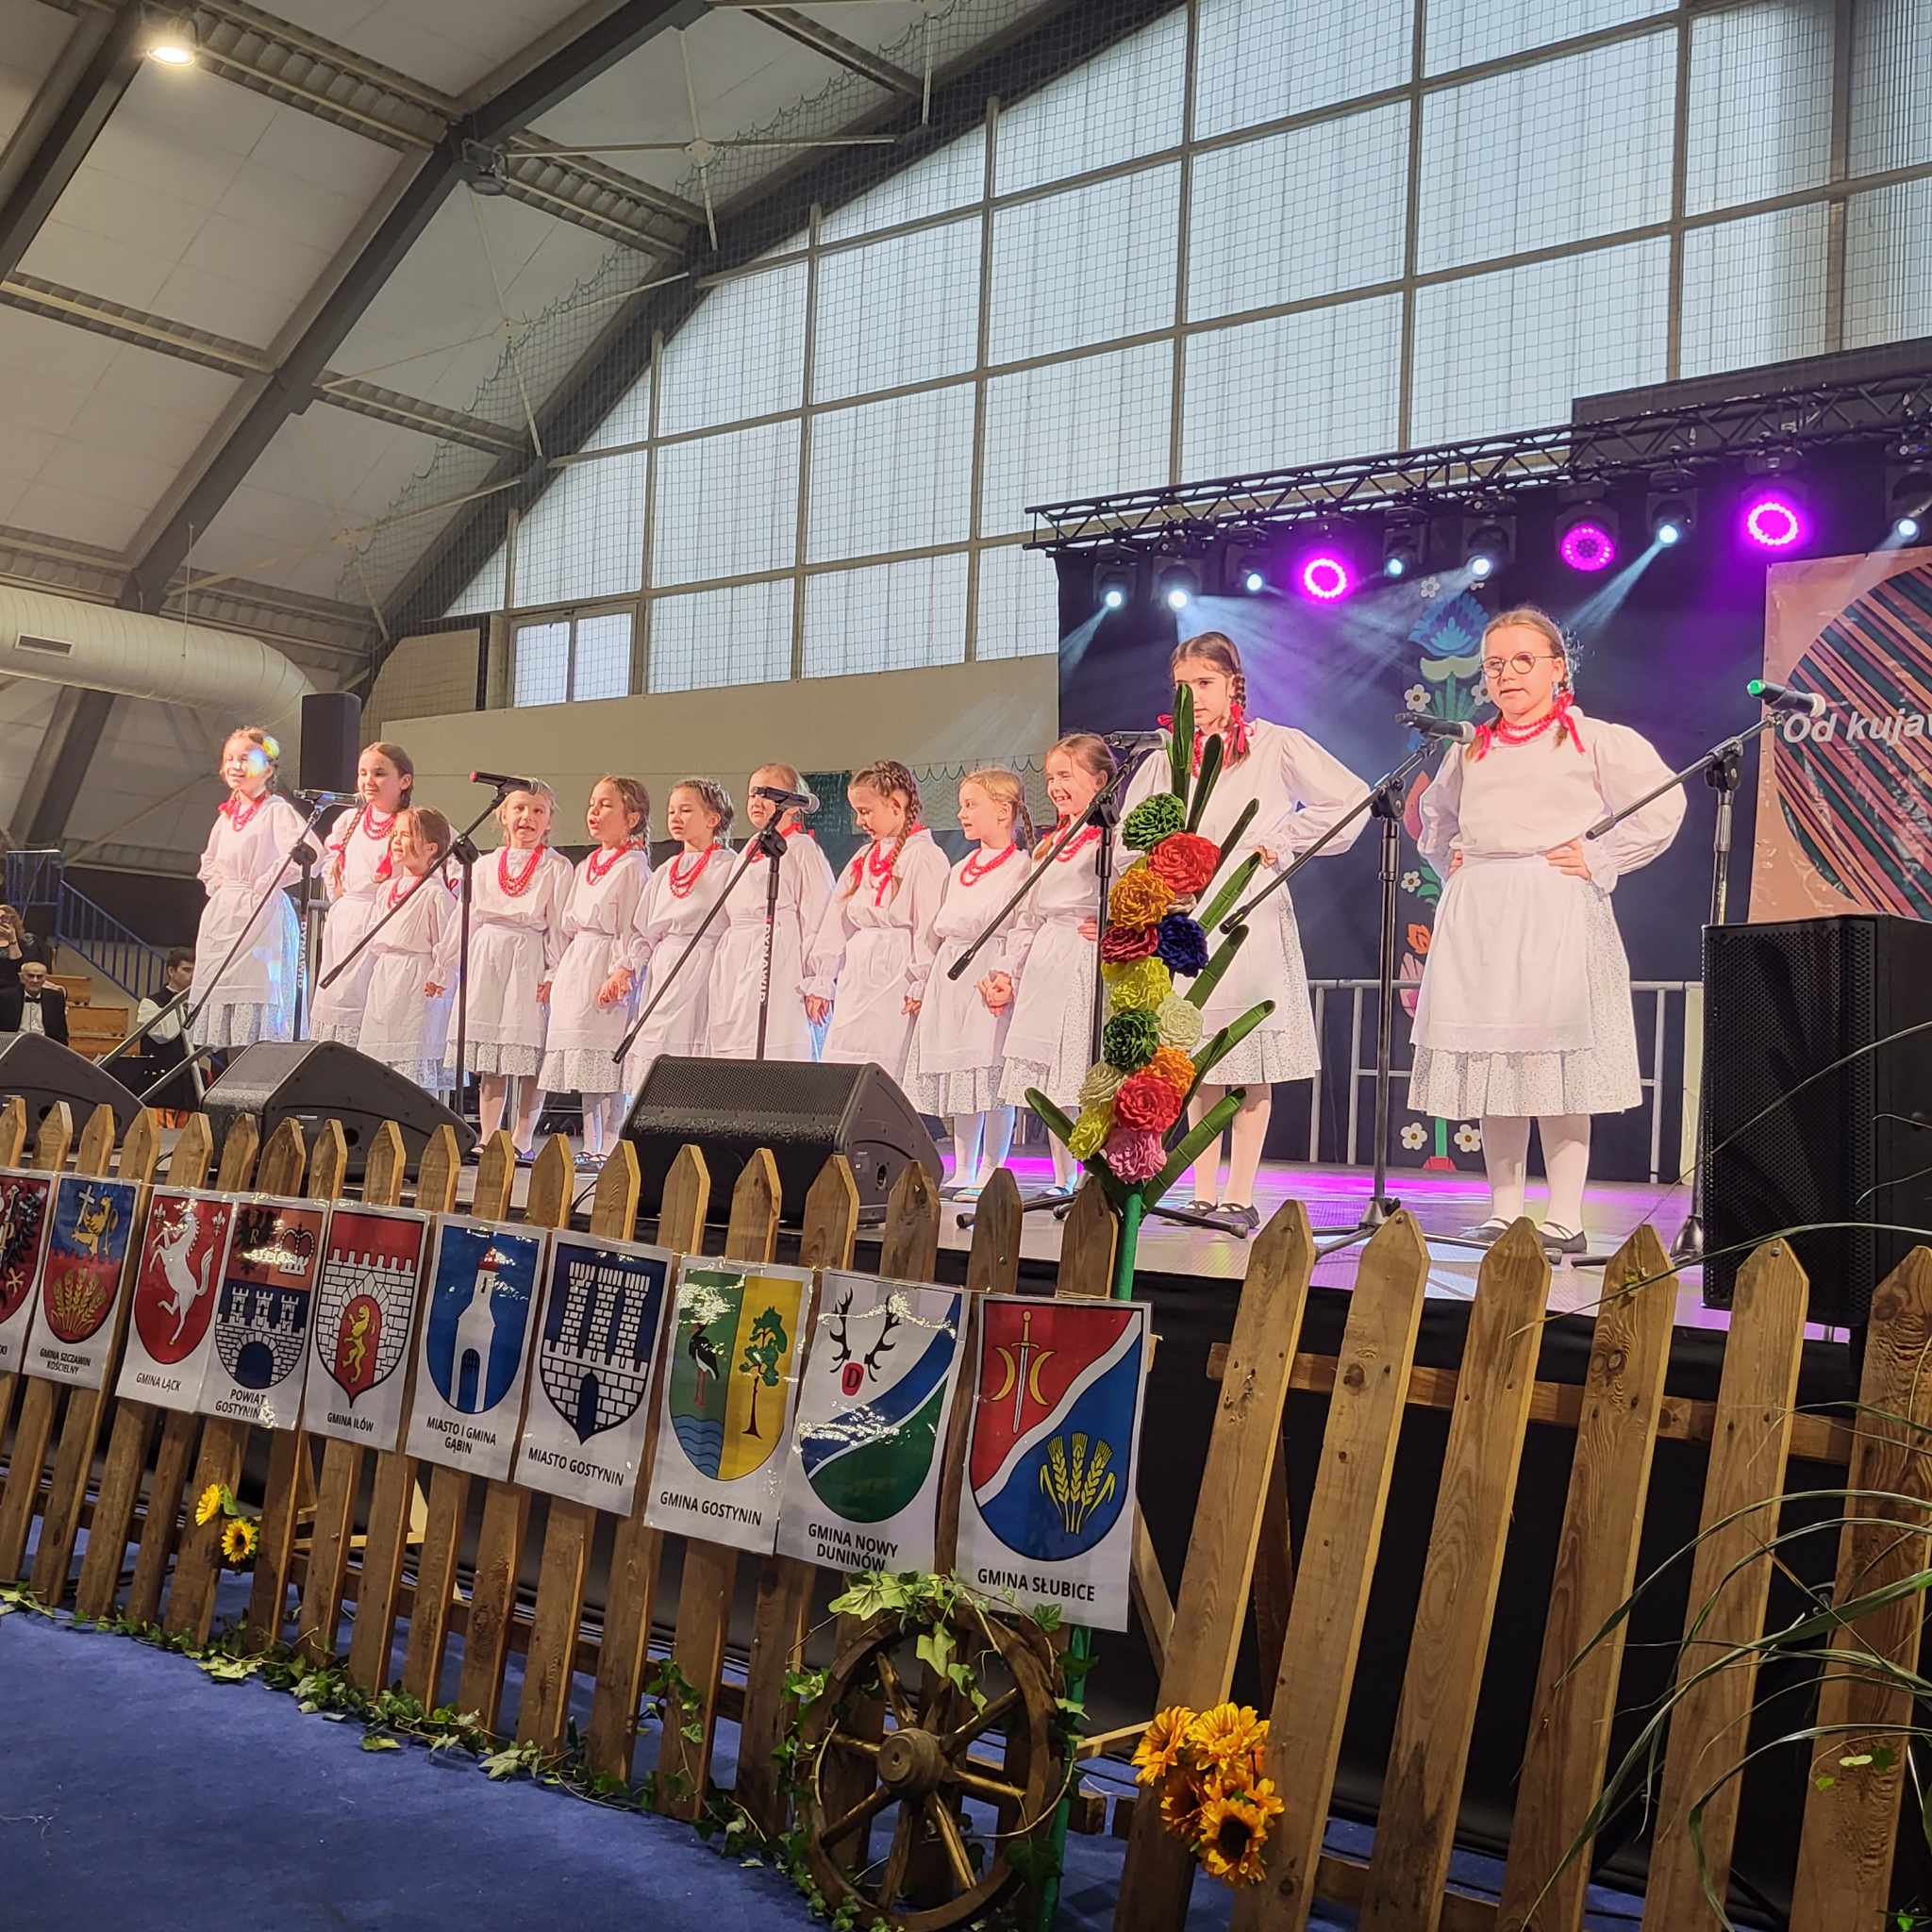 Zespół Pieśni i Tańca Modroki wystąpił podczas 17 Festiwalu Folkloru i Kultury Ziemi Kujawskiej i Mazowieckiej w Łącku